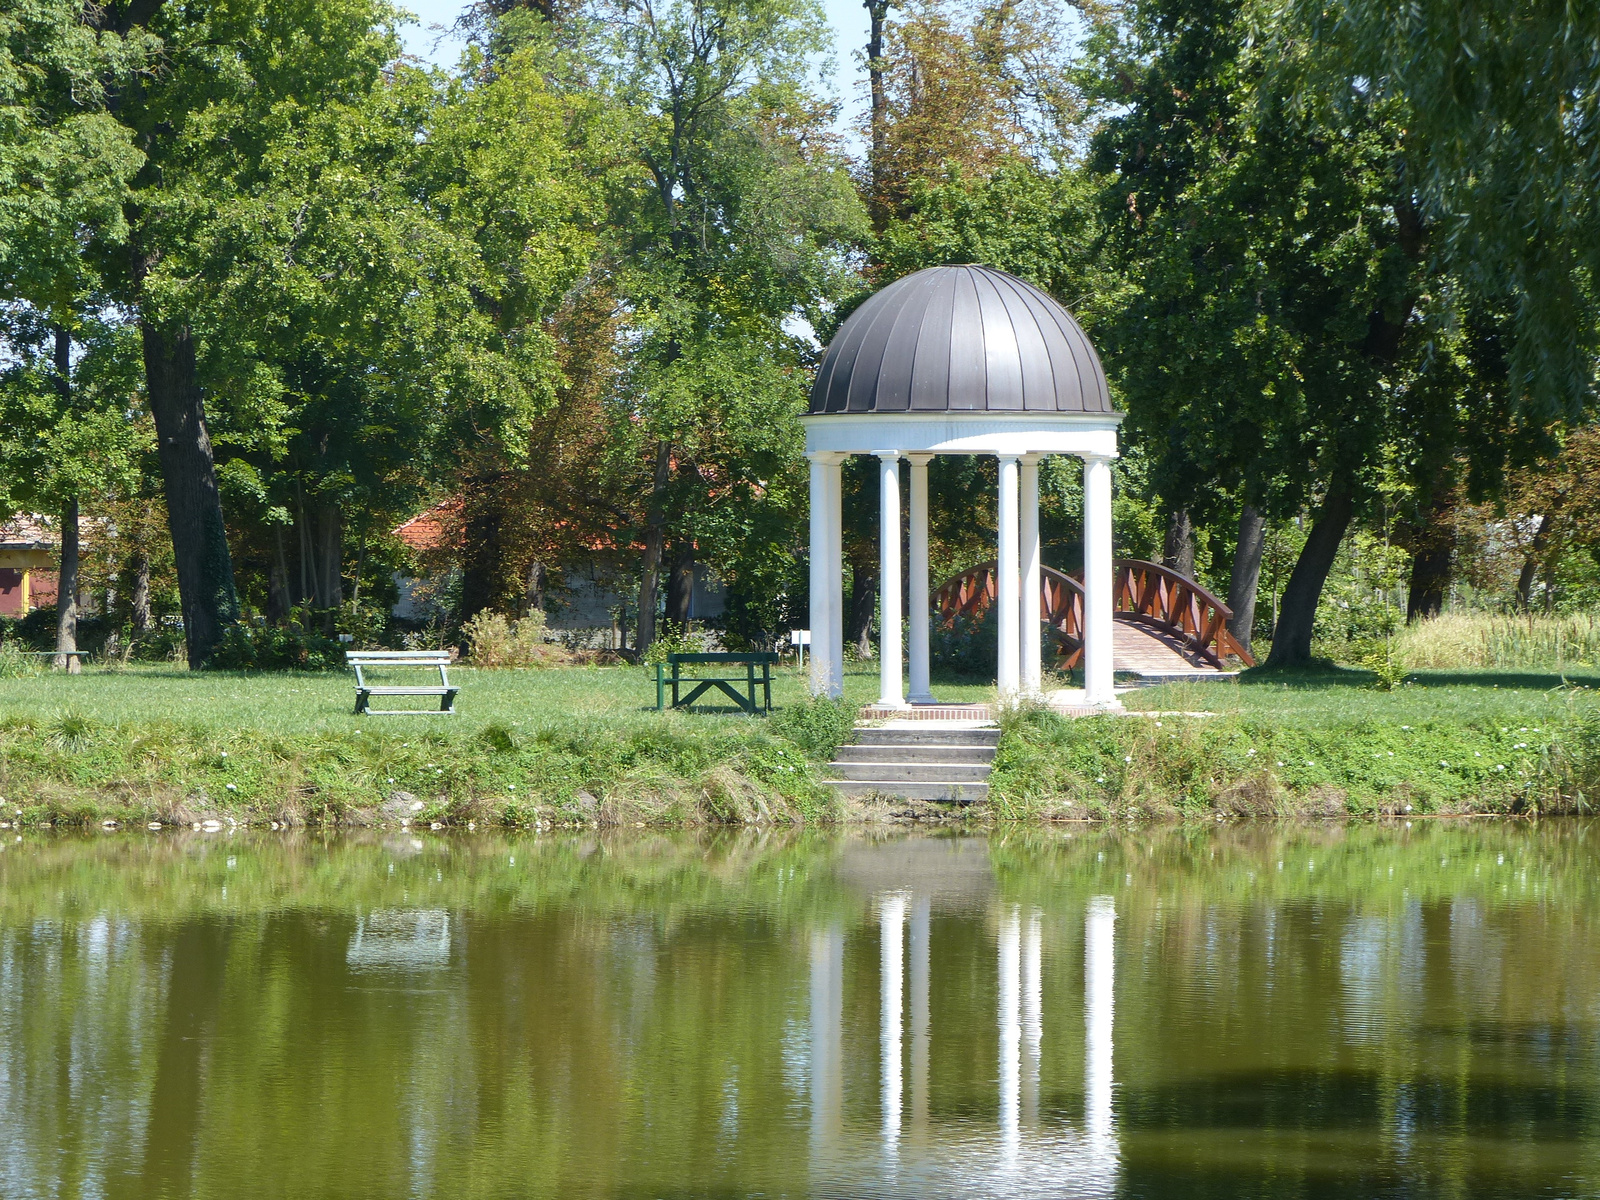 Fehérvárcsurgó, a Károlyi kastély parkja, SzG3